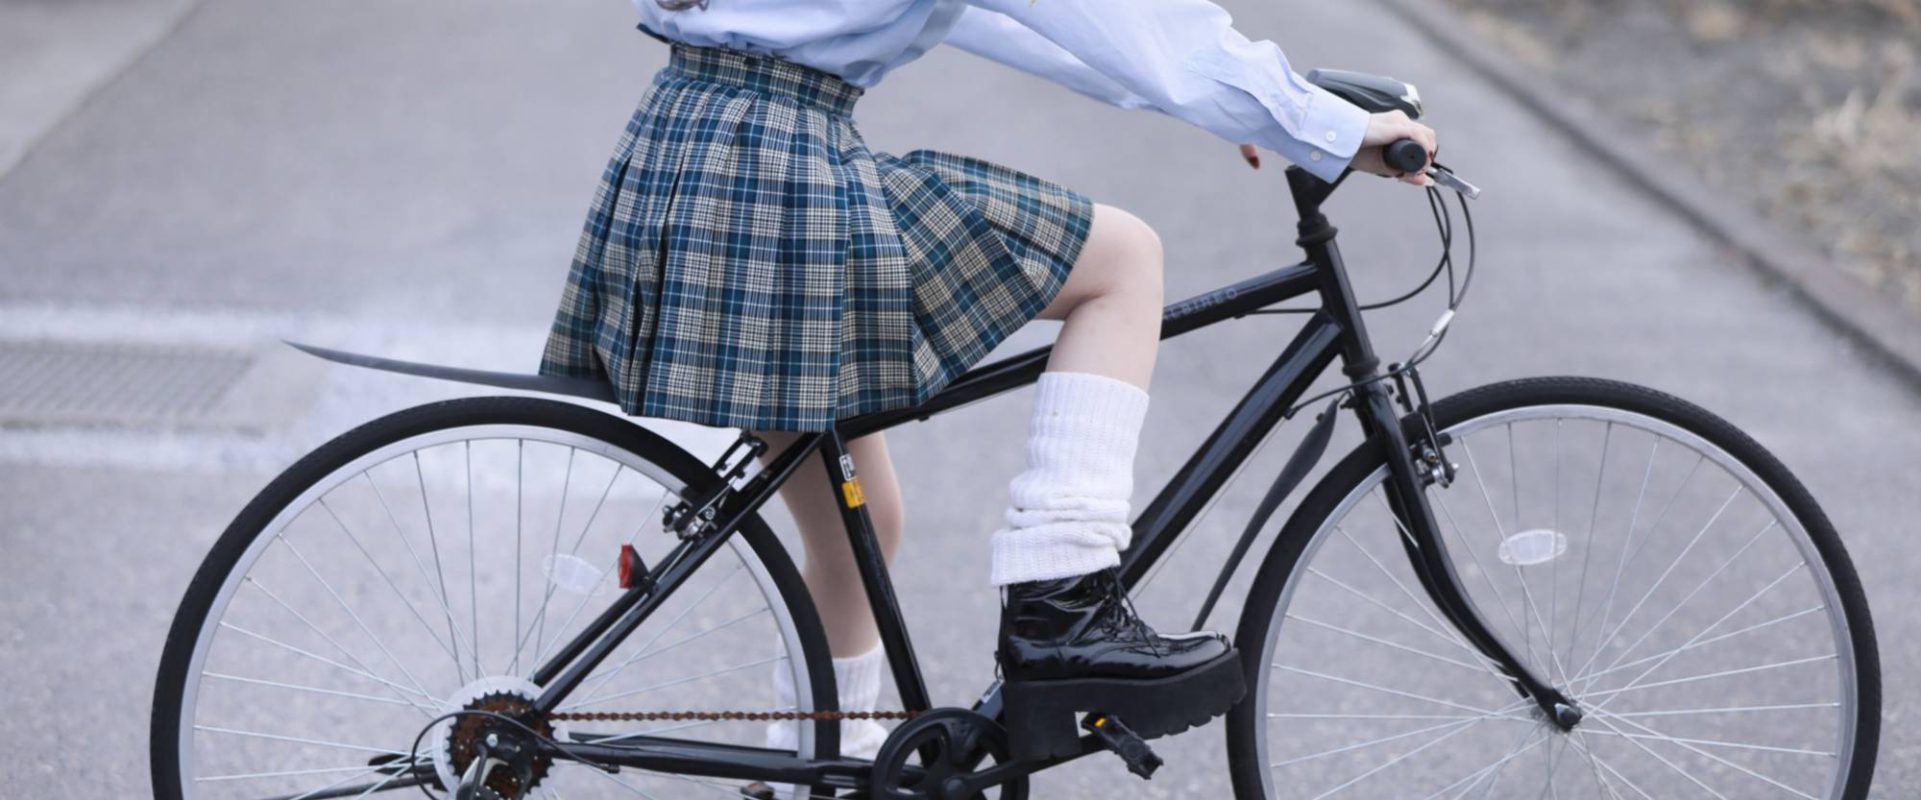 Hari Bersepeda di Jepang, Promosi Gaya Hidup Sehat